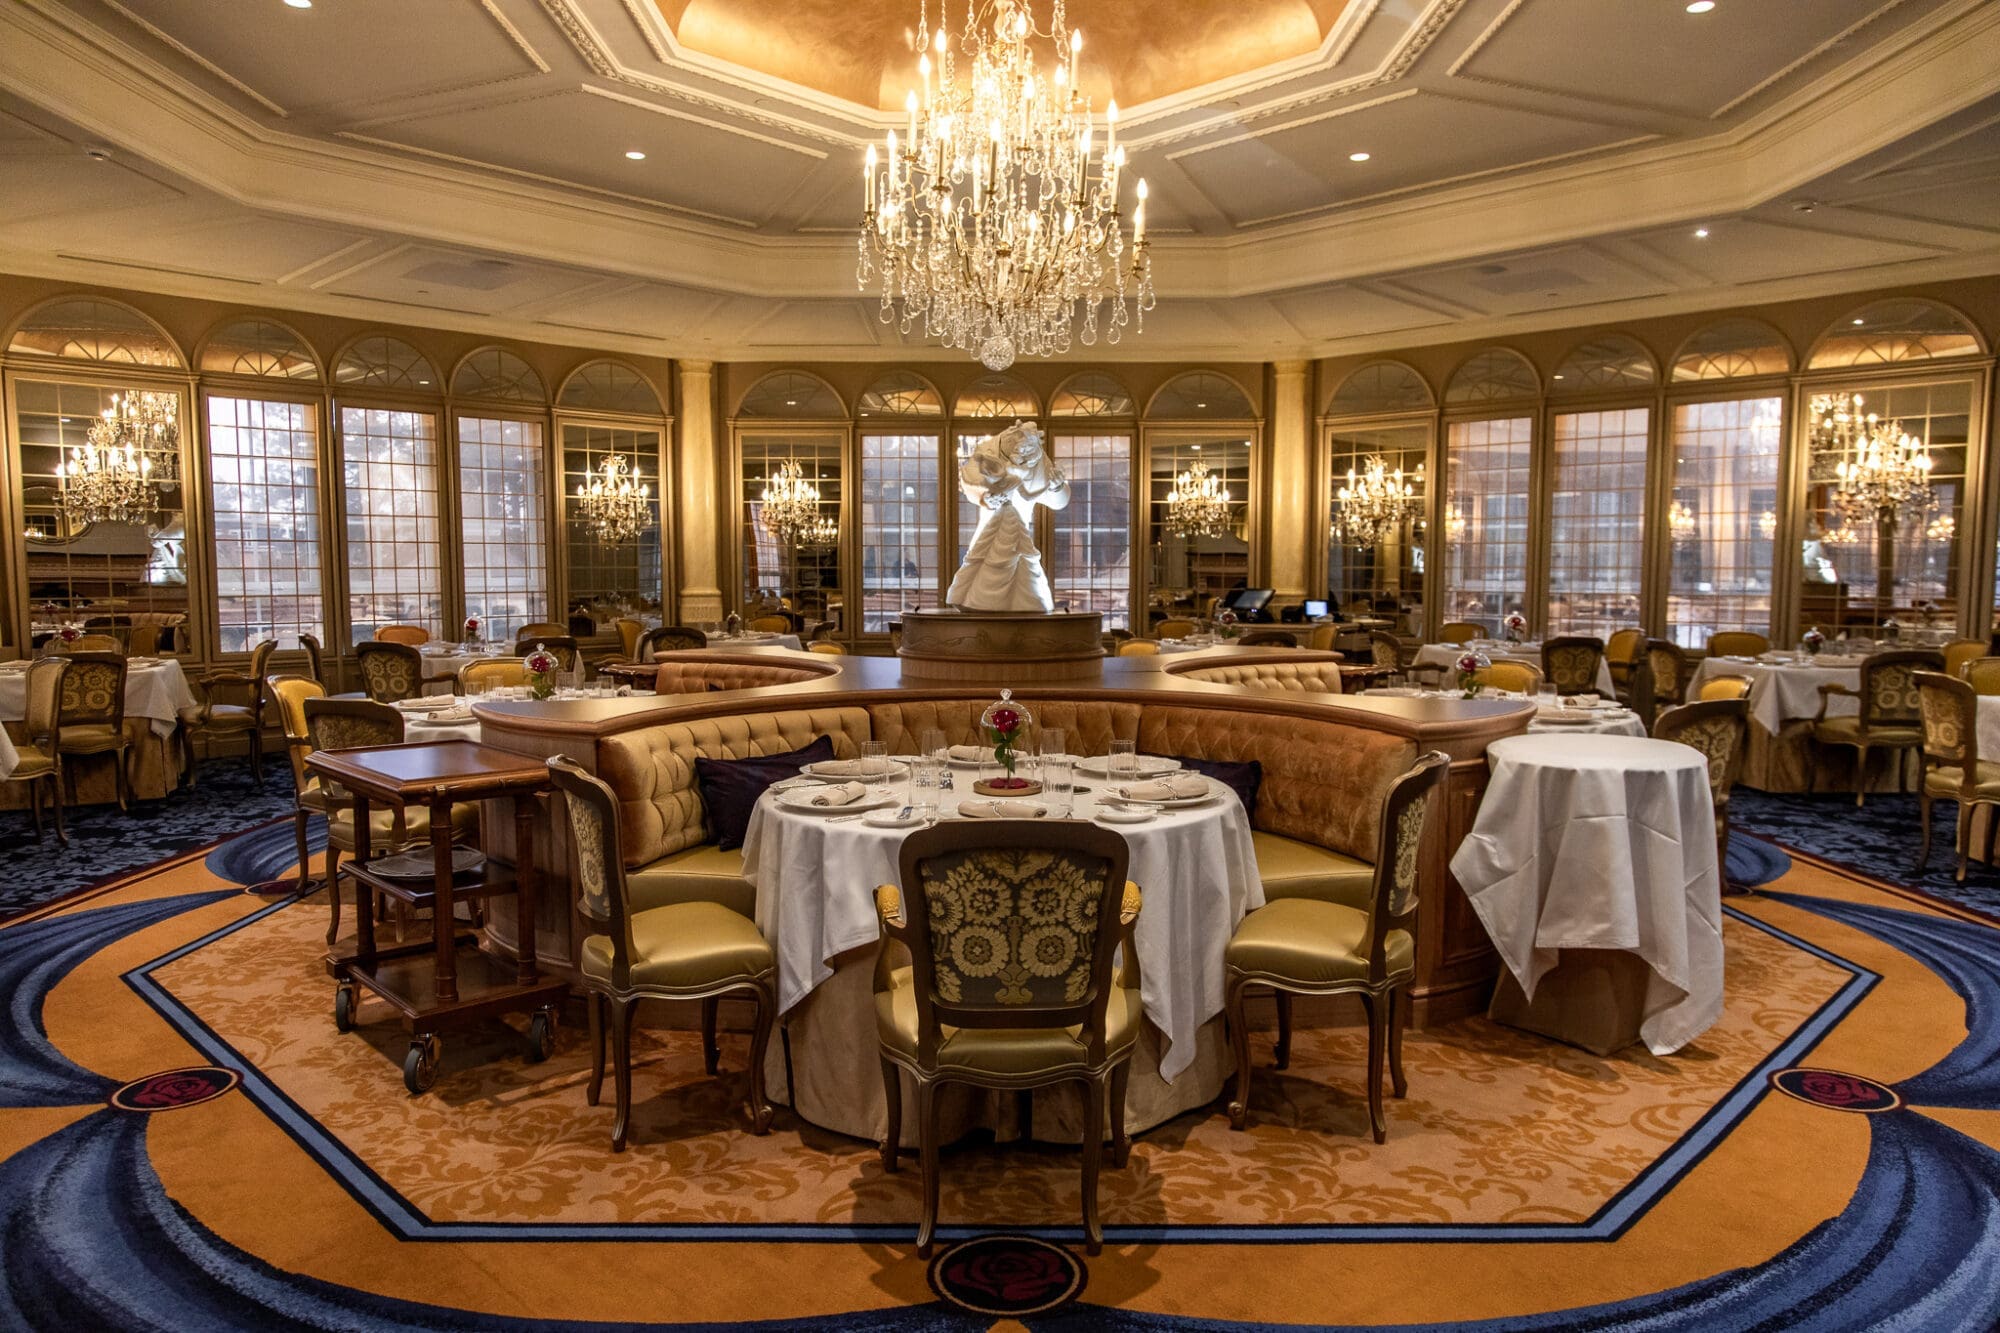 Lumiere Restaurant Disneyland Paris Hotel Interiors Dining